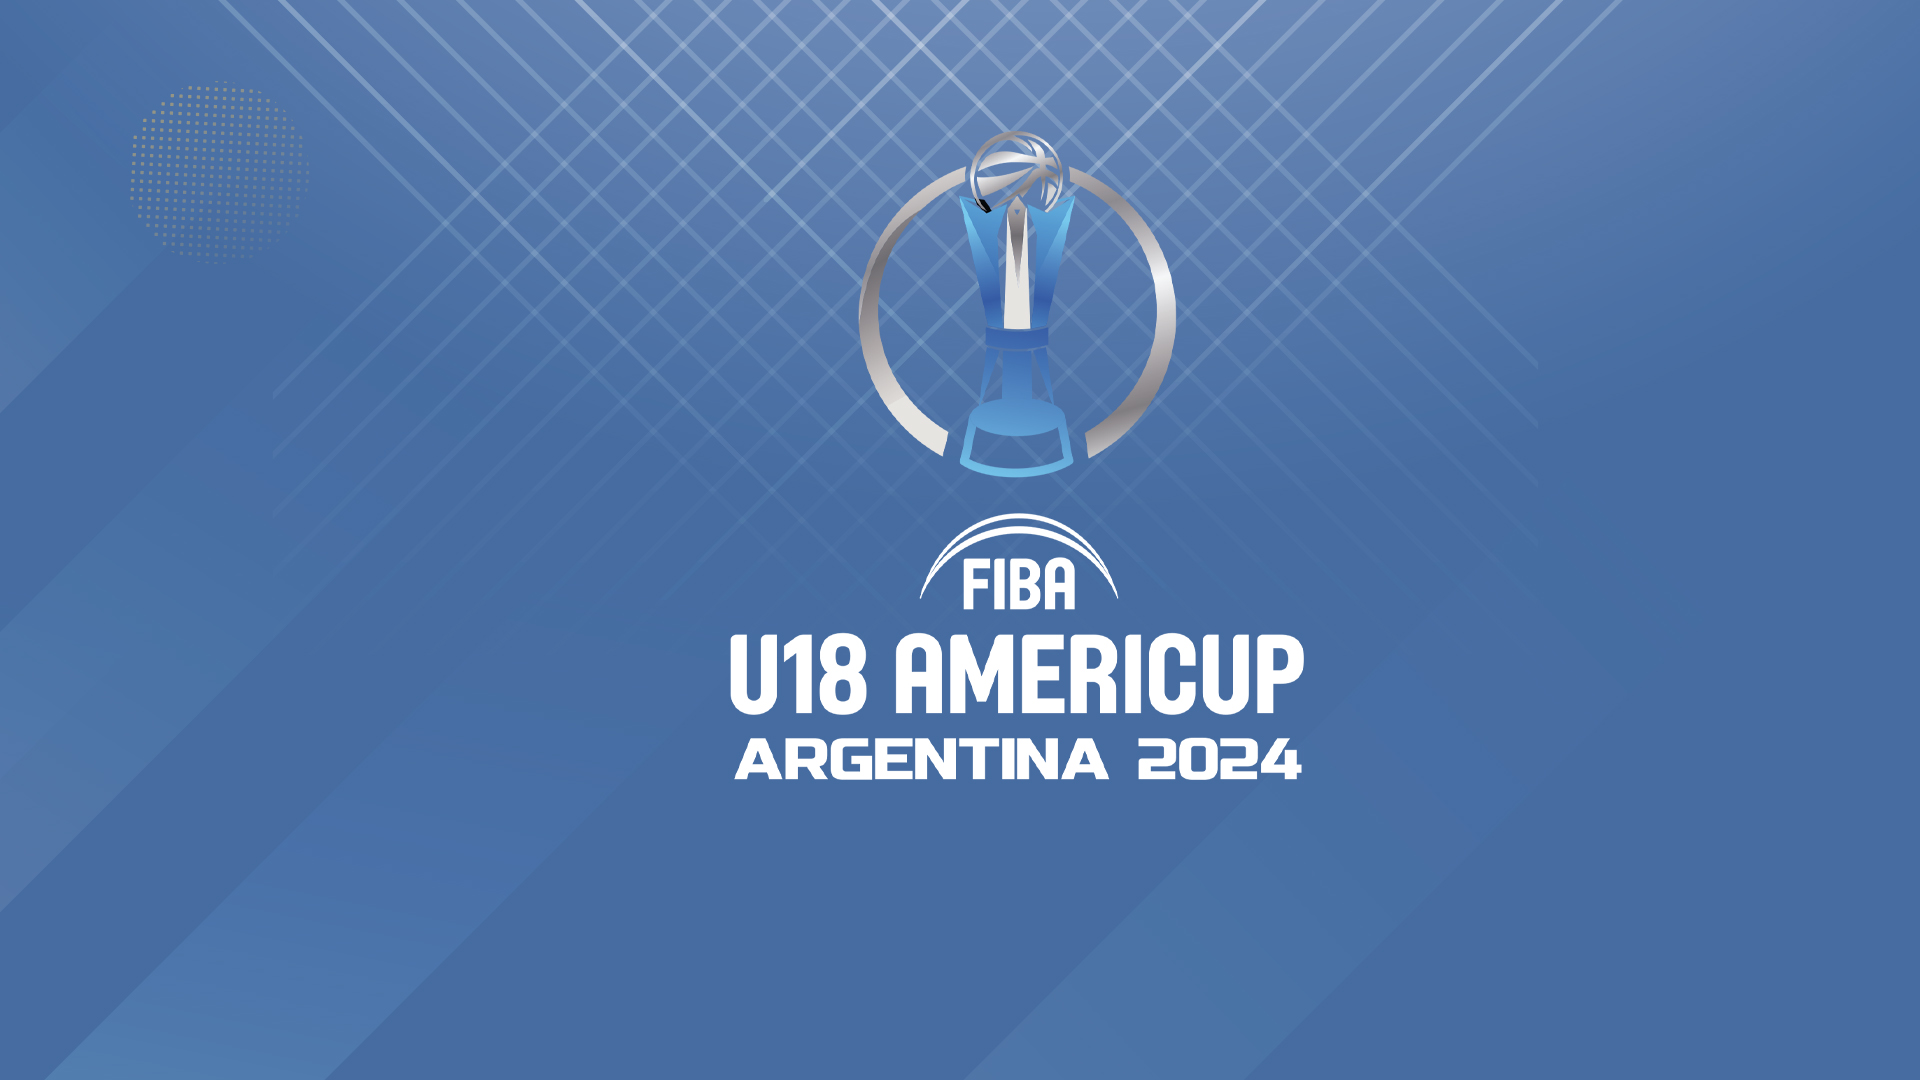 Se sortearon los FIBA AmeriCup U18 Masculino y Femenino